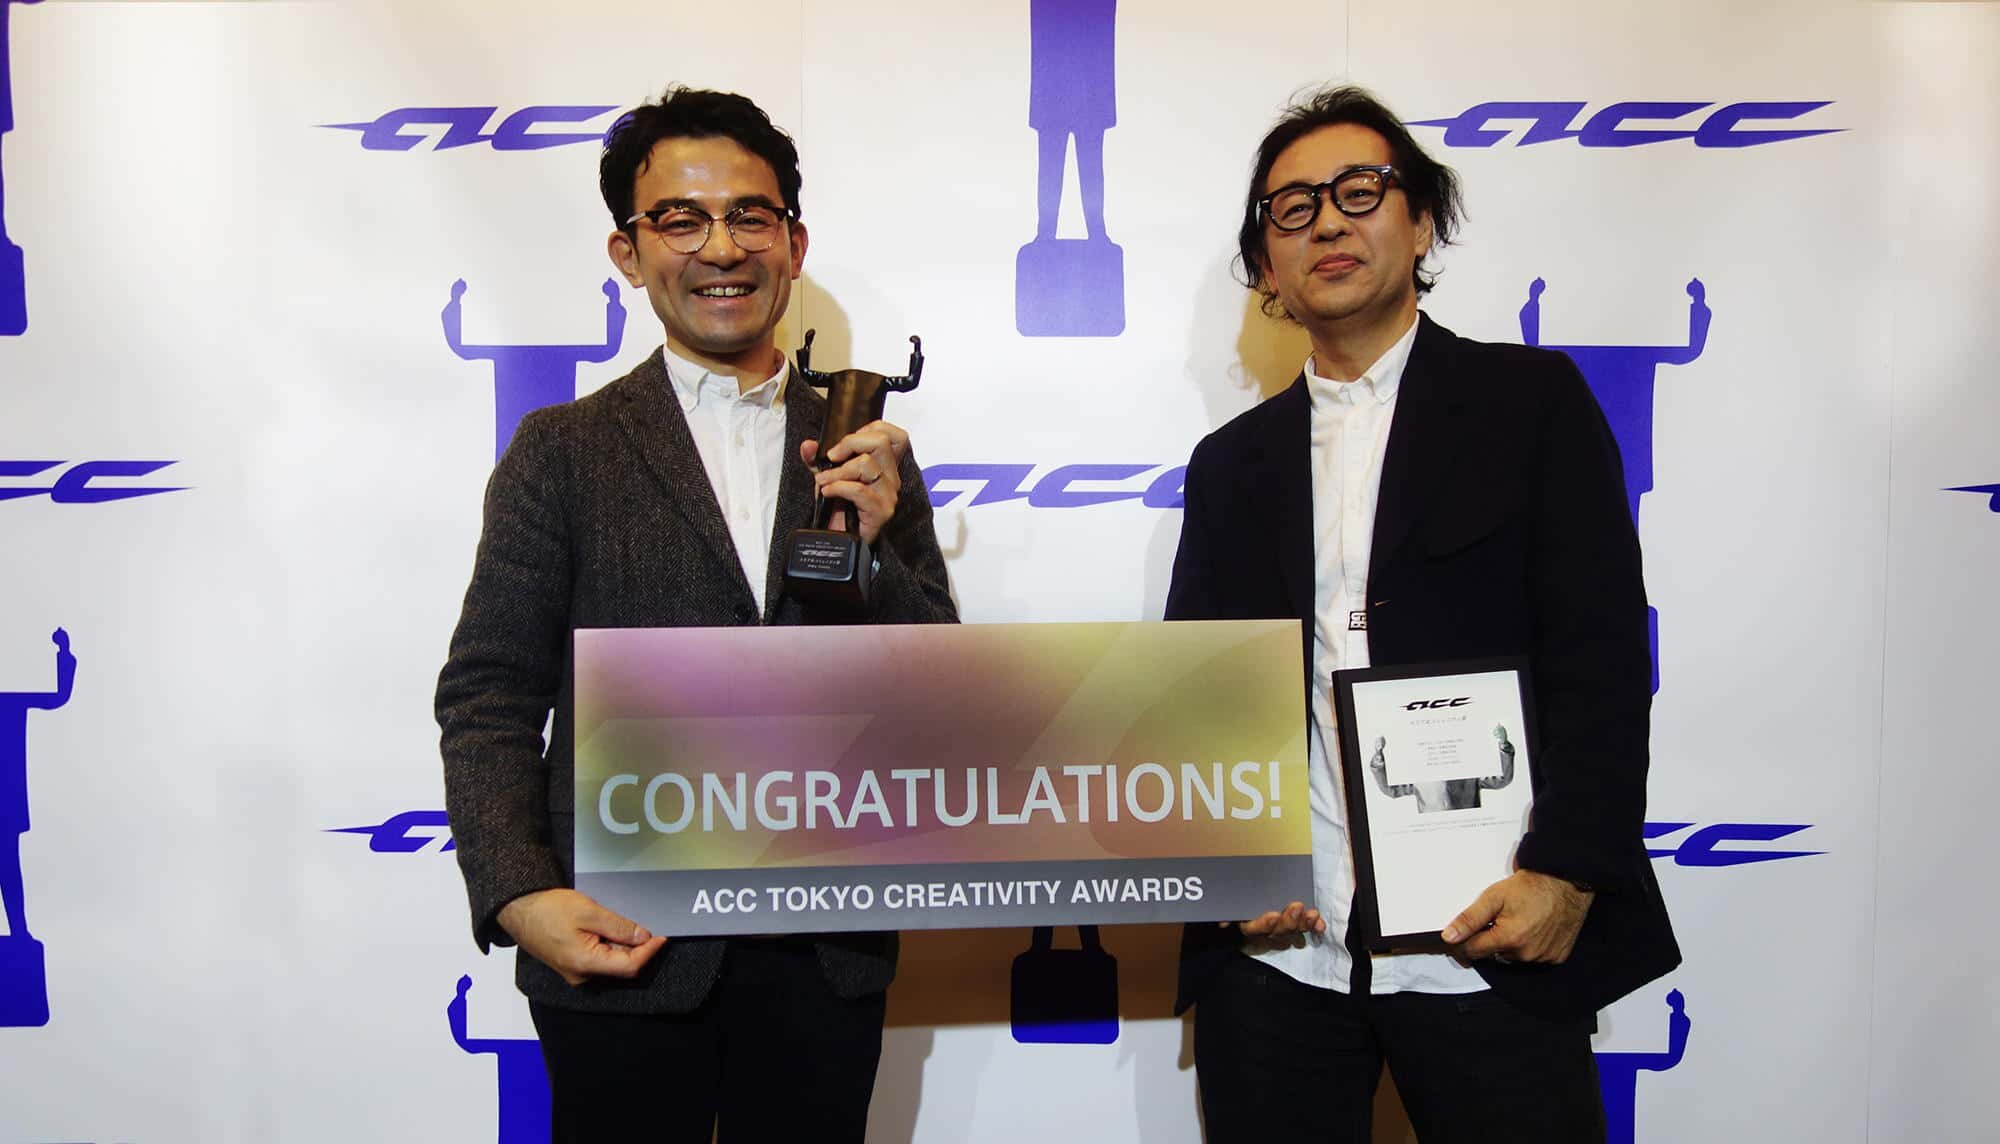 家族のはなし2016 信濃母日新聞 ACC TOKYO CREATIVITY AWARDS受賞